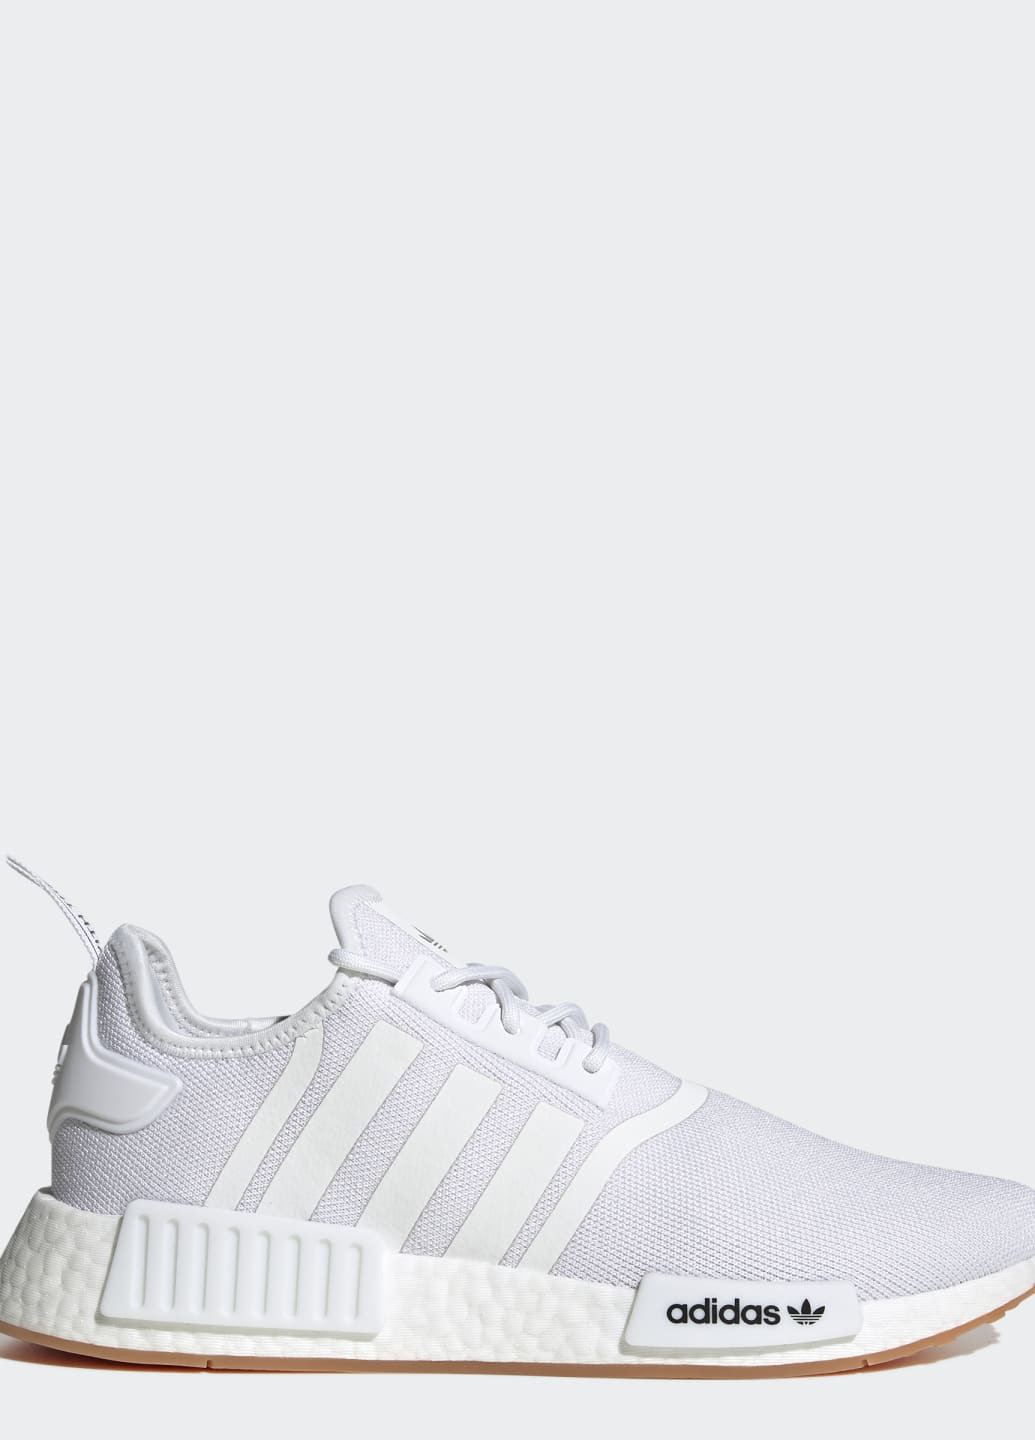 Белые всесезонные кроссовки nmd_r1 primeblue adidas